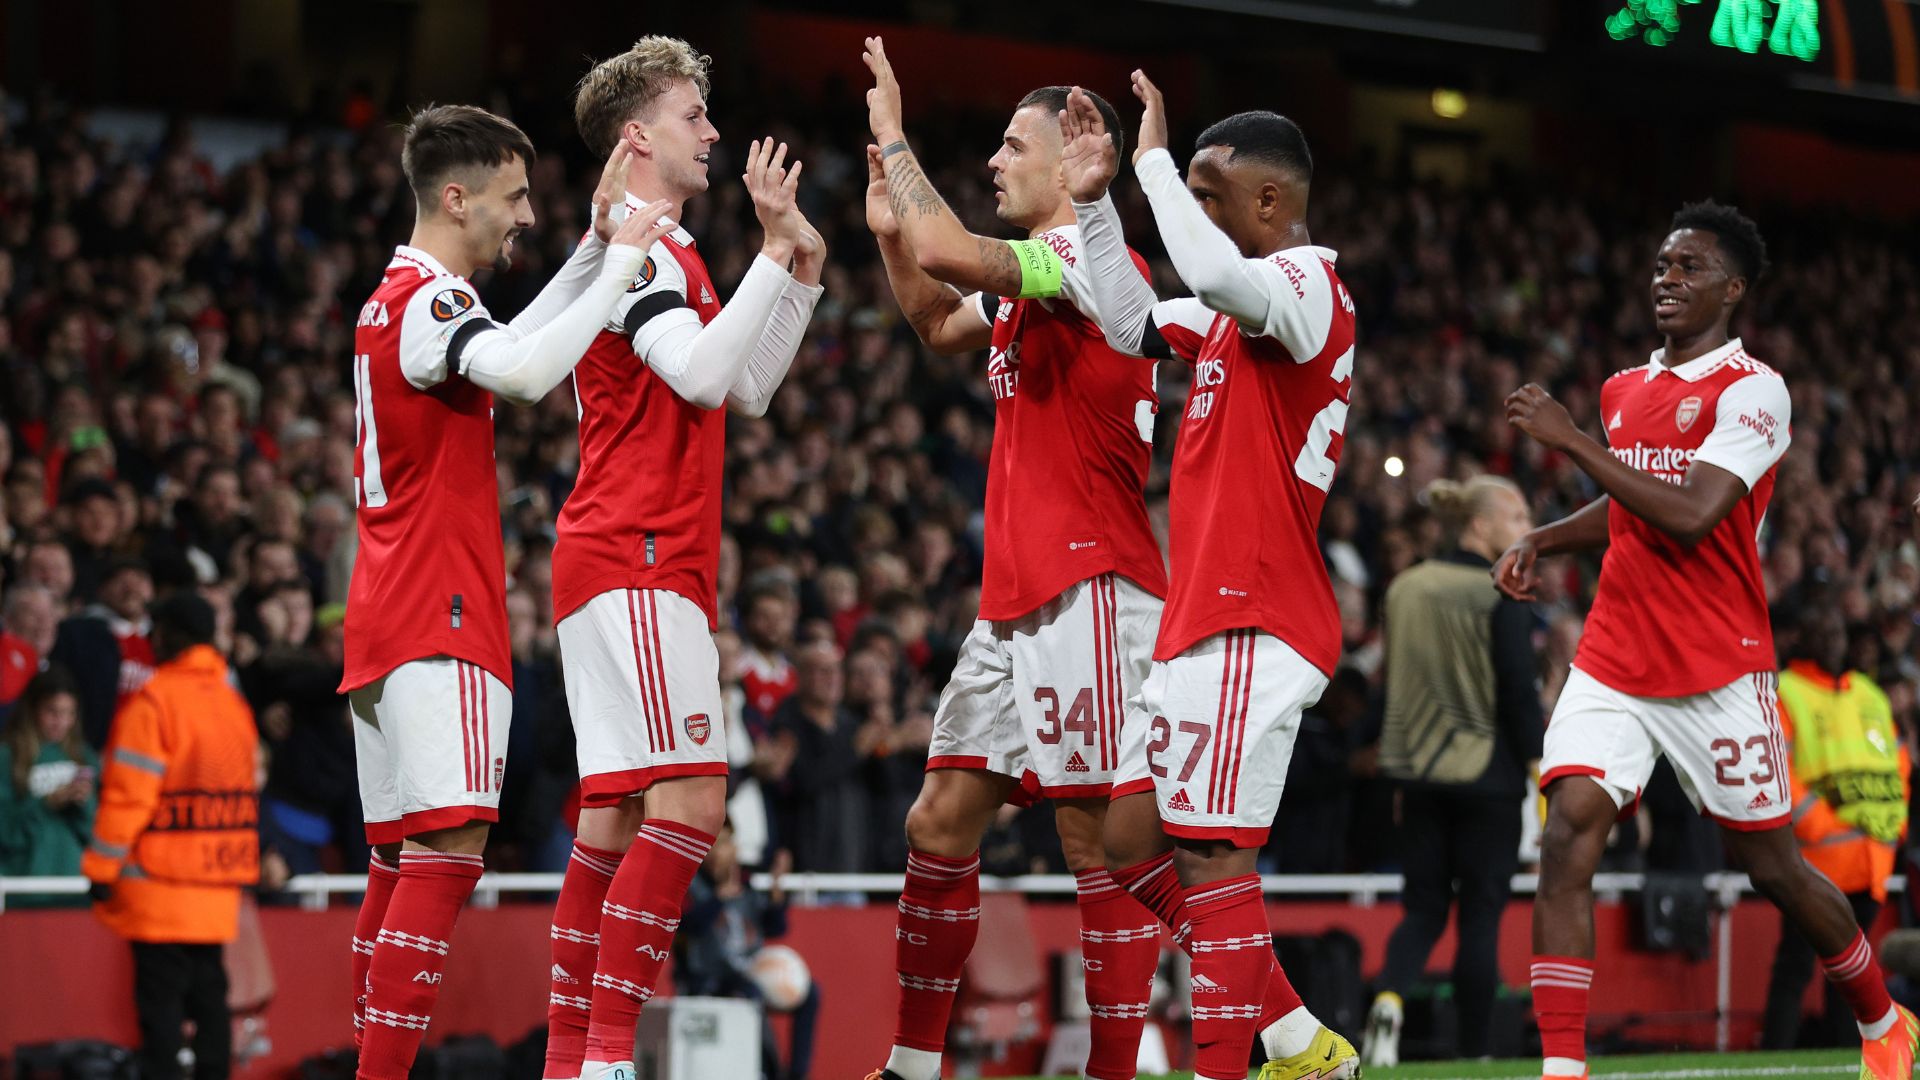 Equipe do Arsenal comemorand vitória na Europa League